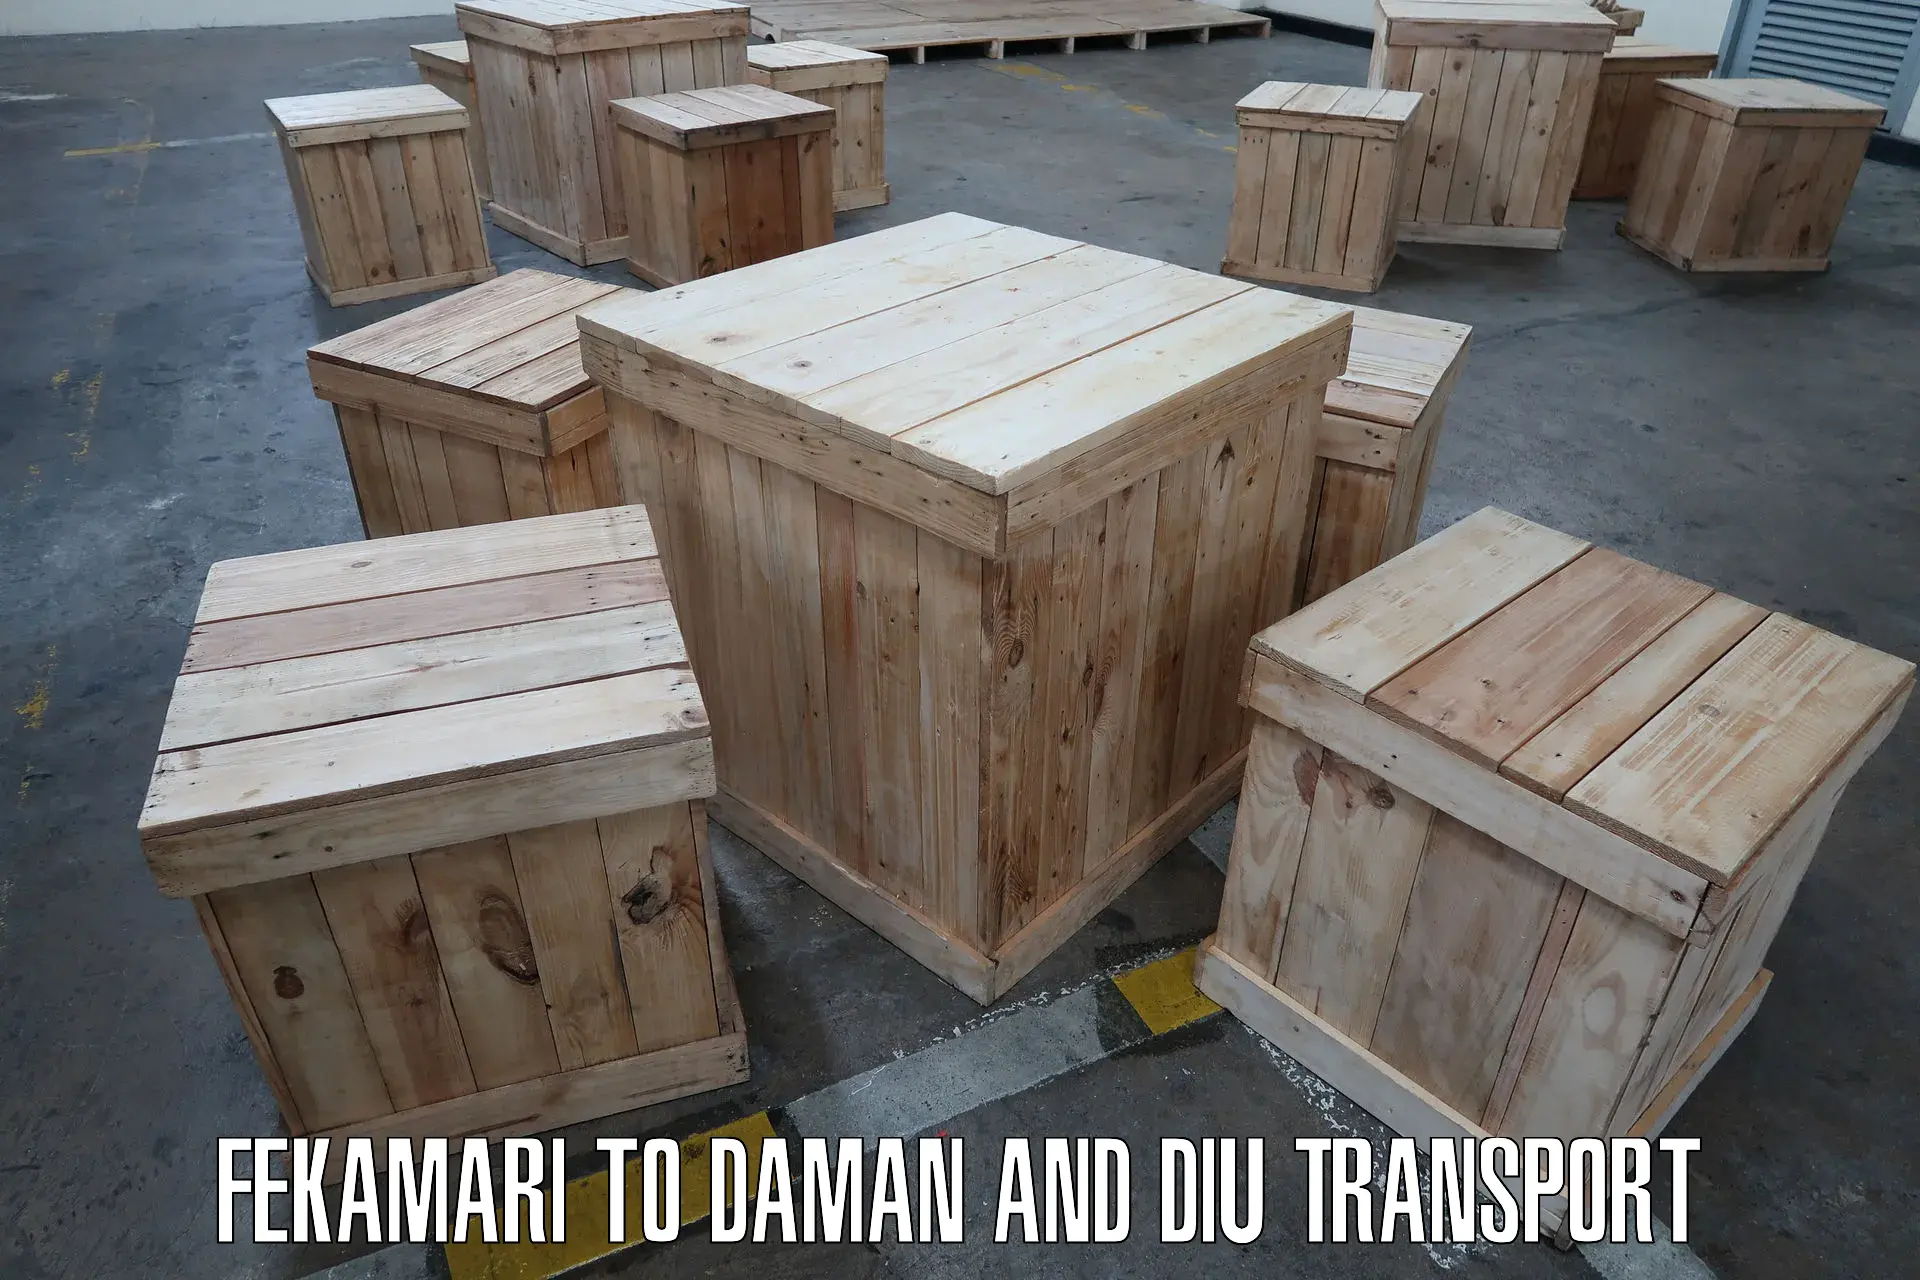 Lorry transport service Fekamari to Daman and Diu